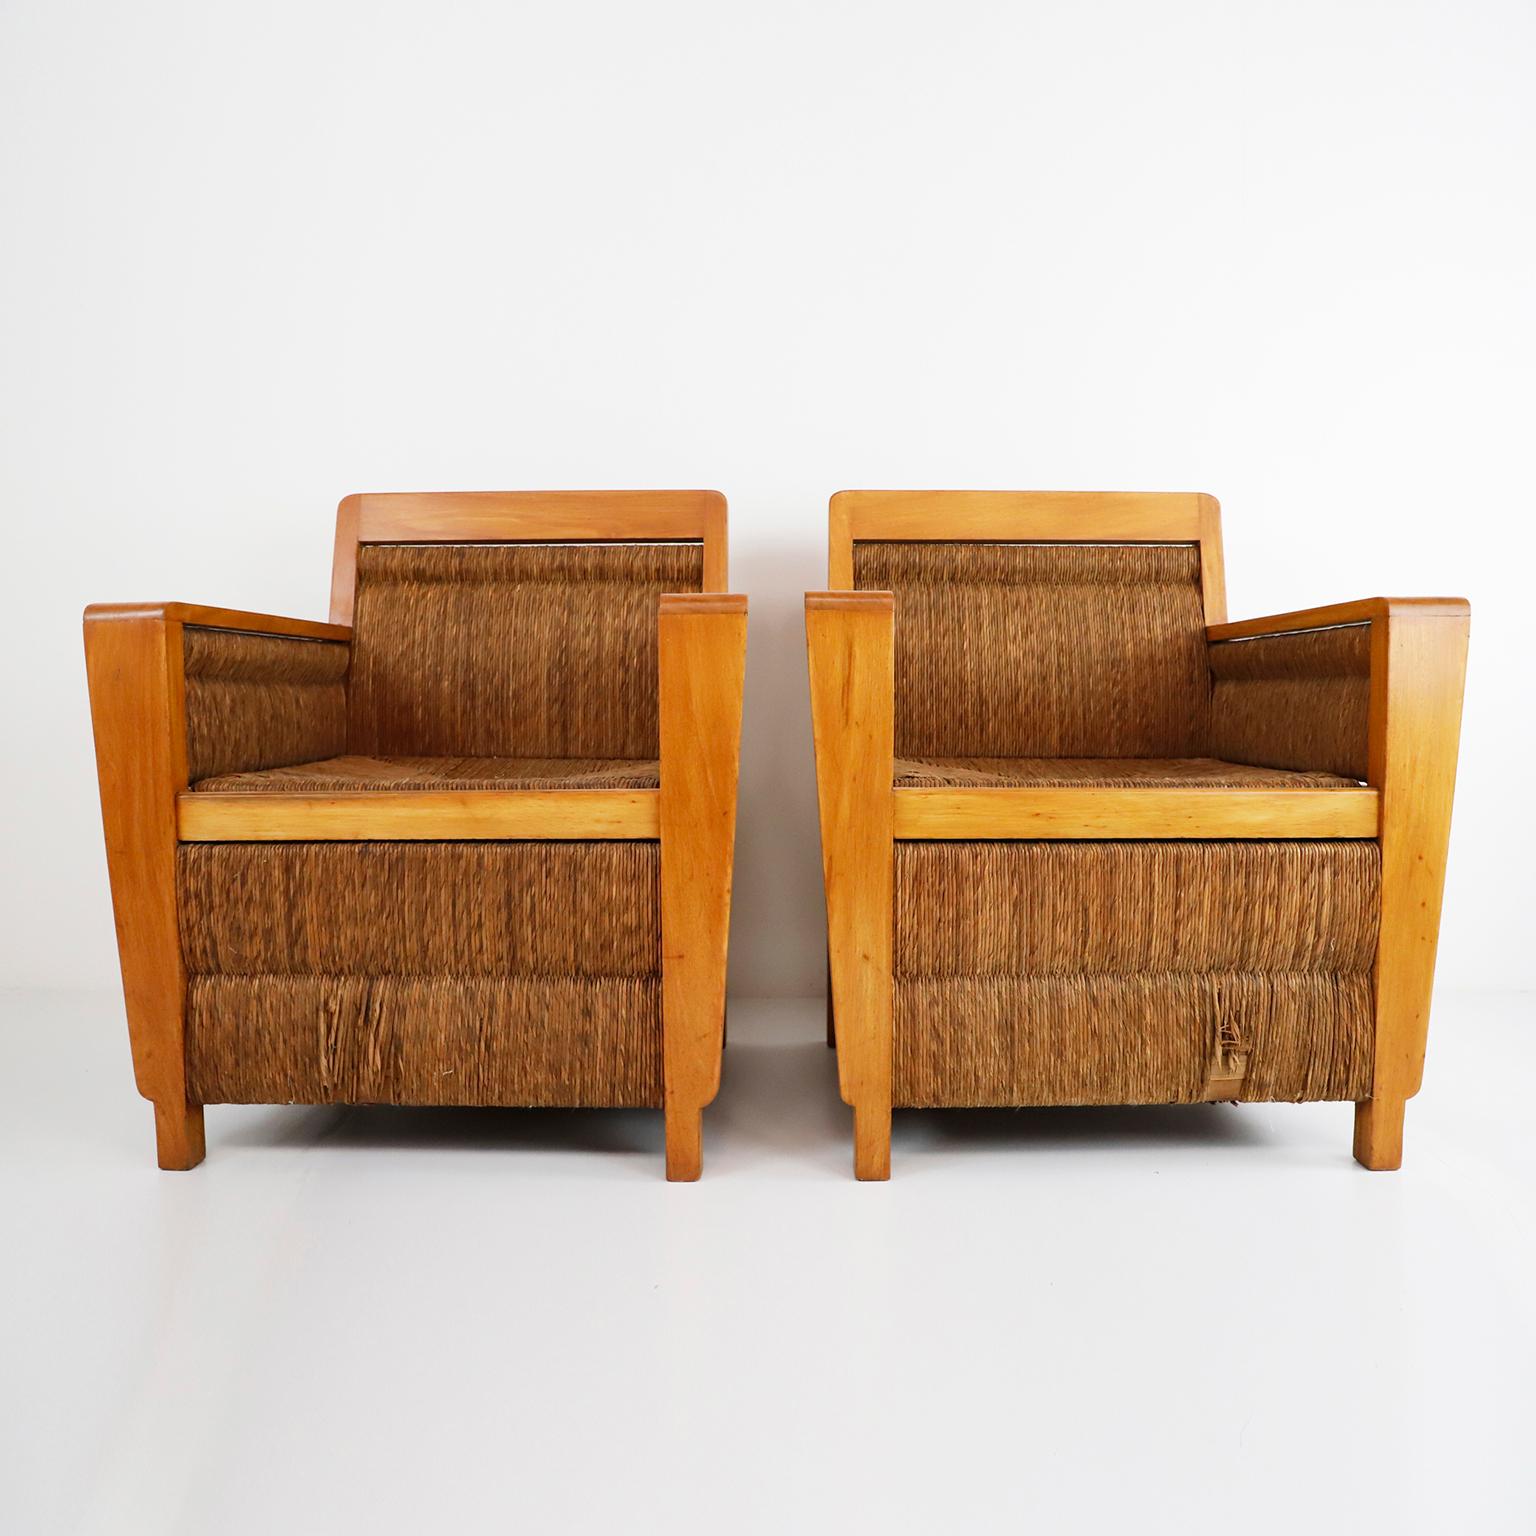 Zwei mexikanische geflochtene Sessel aus den 1950er Jahren aus Primavera-Holz und Palmenschnüren. Mit seinem schlichten, aber eleganten und modernen Rahmen bietet dieser Sessel mit seiner schön geflochtenen Sitzfläche überraschend viel Komfort. Der